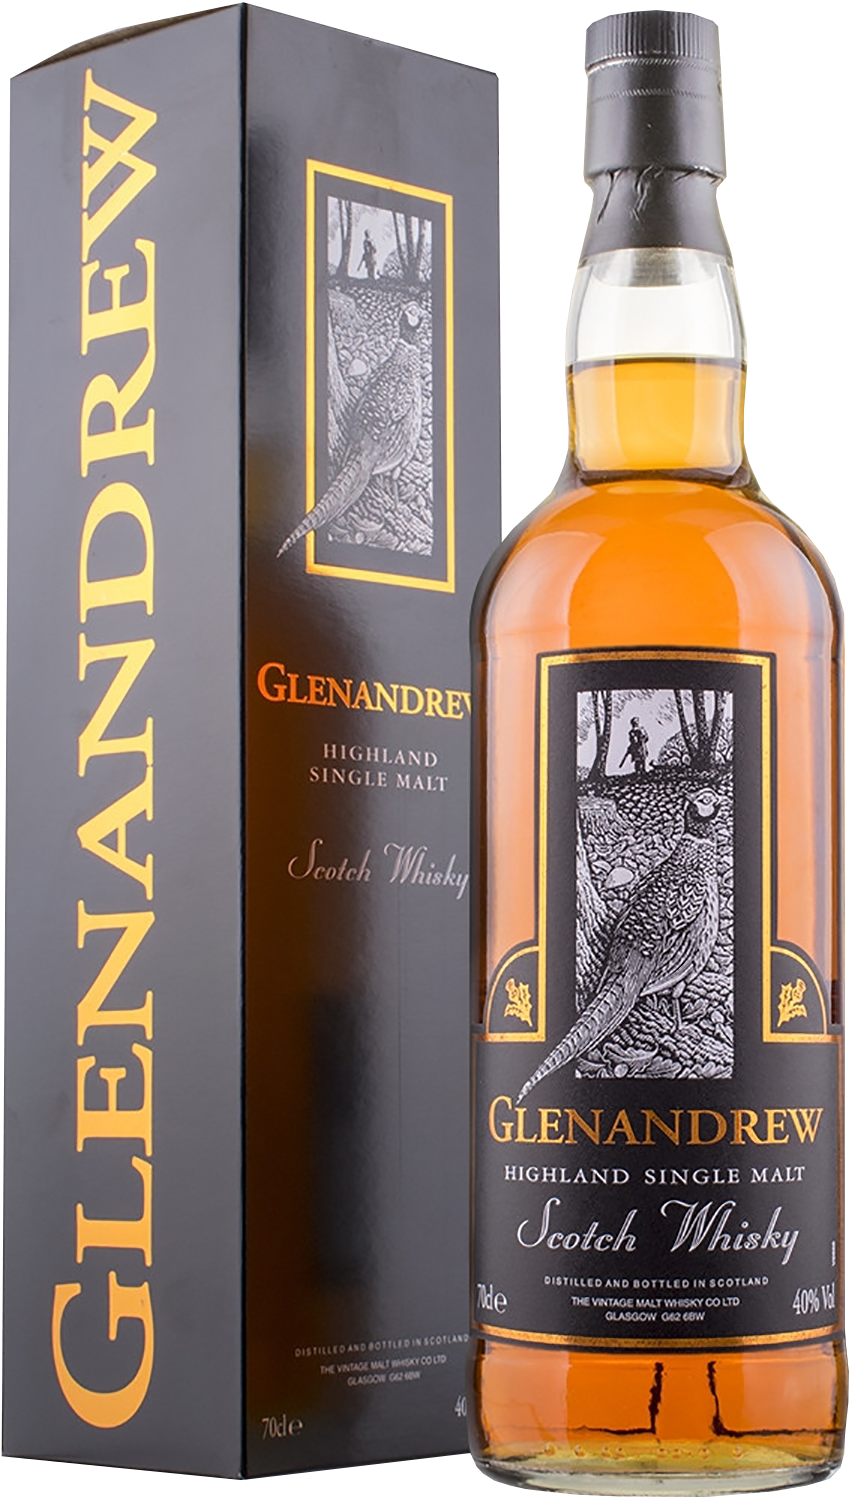 Glenandrew Highland Single Malt Scotch Whisky (gift box) glenmorangie grand vintage malt highland single malt scotch whisky gift box